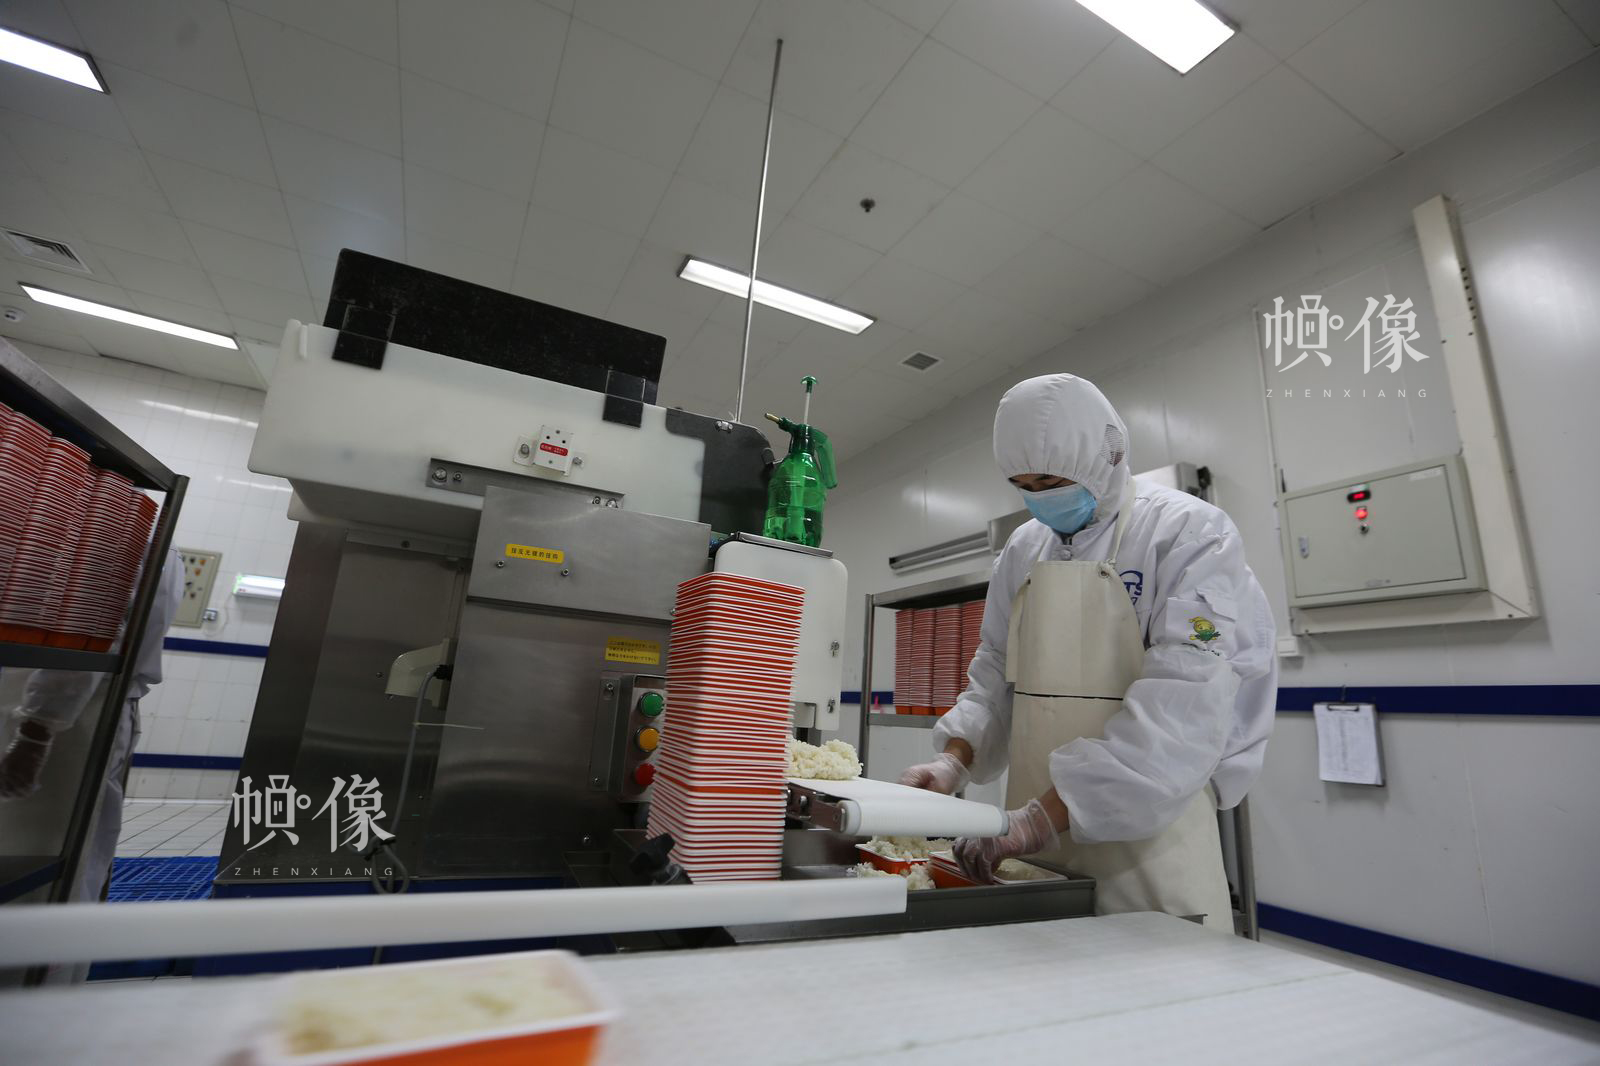 工人将蒸好的米饭装盒。中国网记者 吴闻达 摄